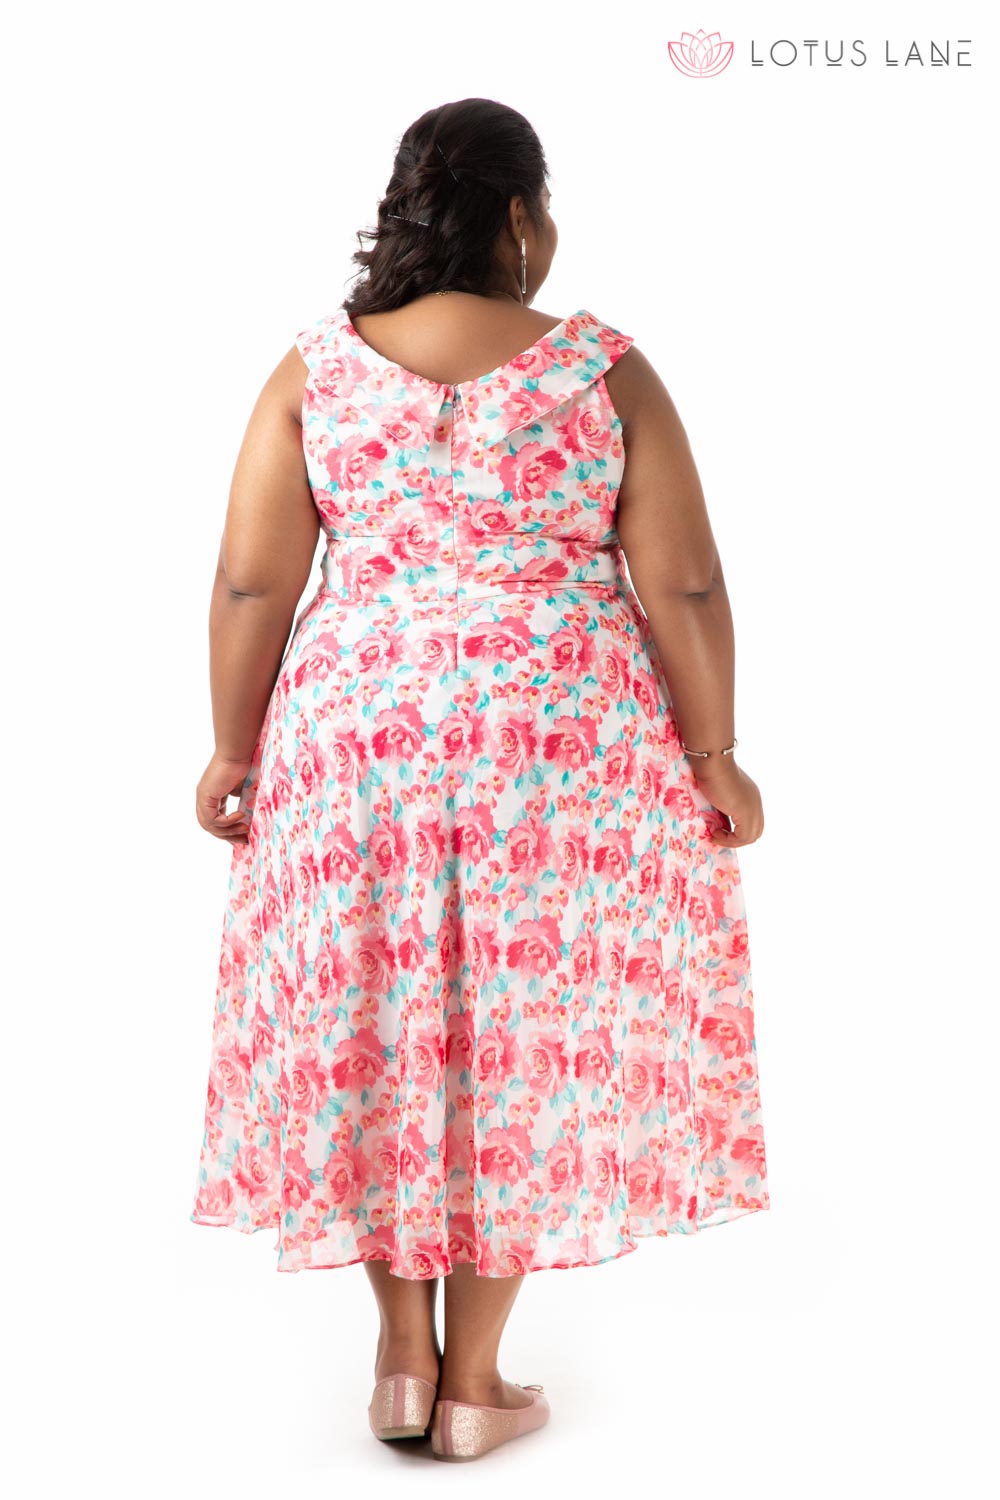 Plus Size Dress- Marvellous Floral Pink Dress - LotusLane